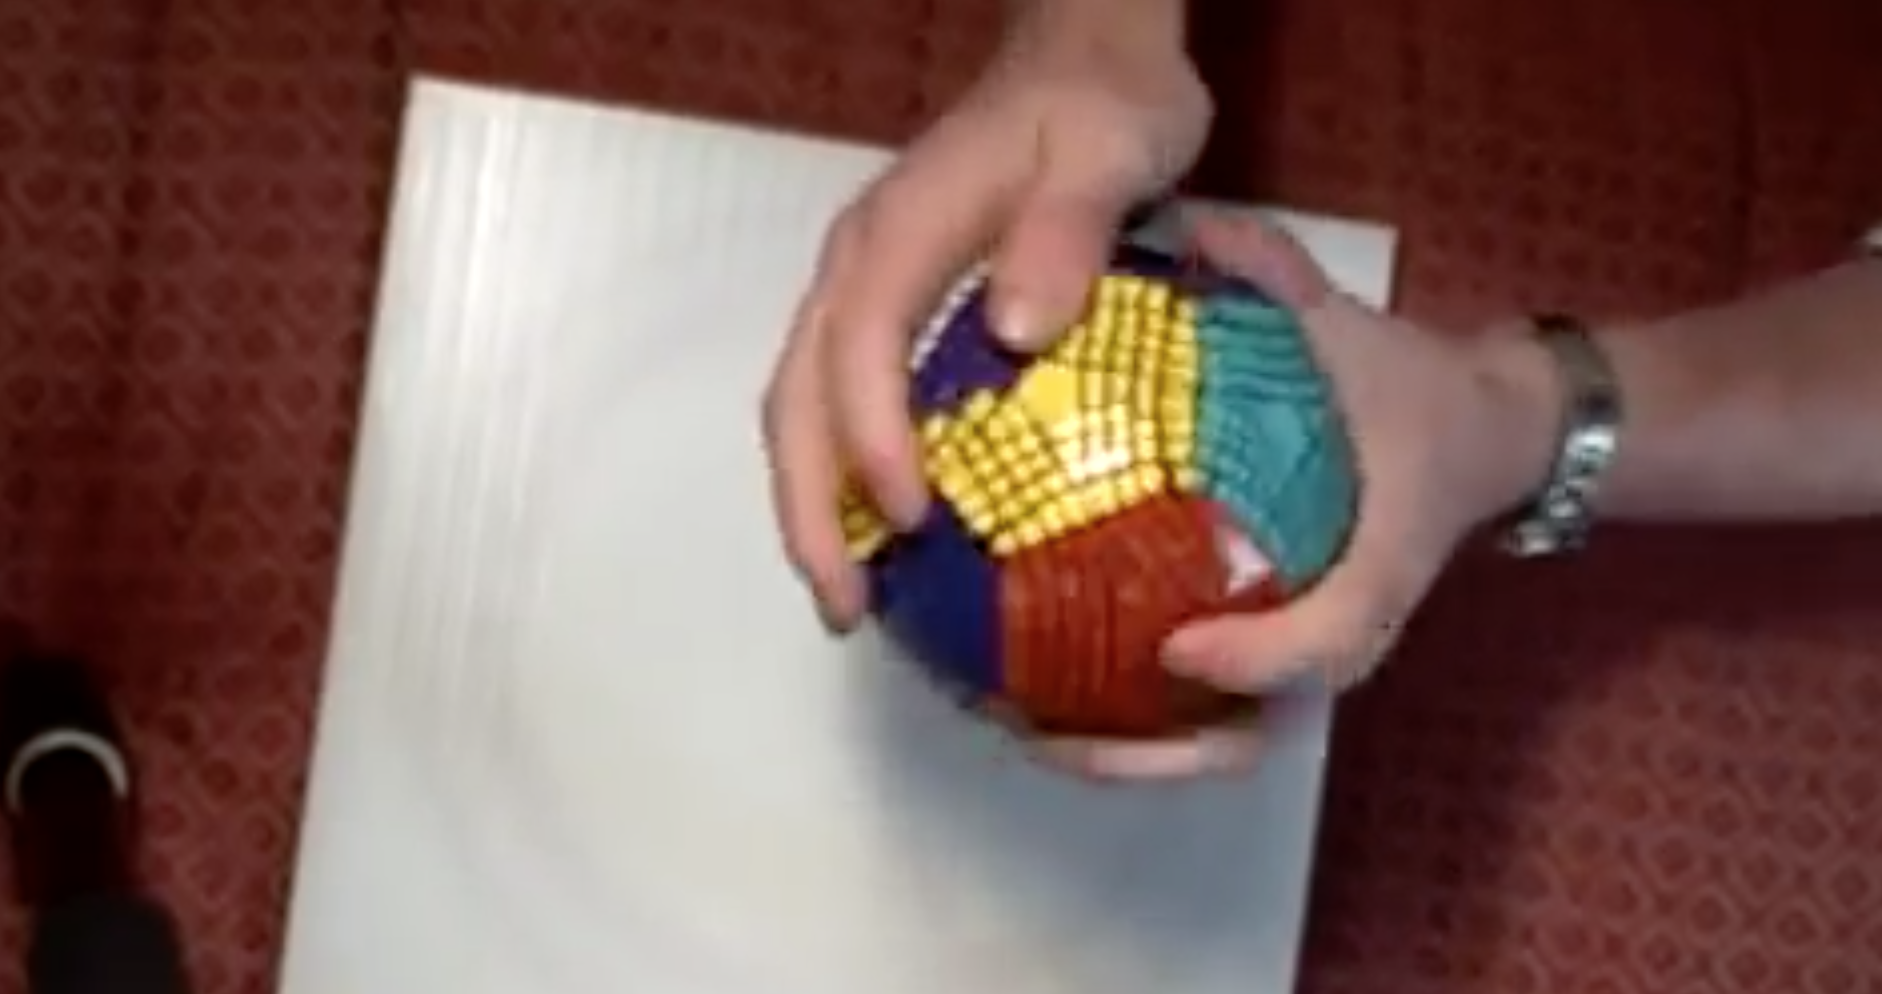 Petaminx Rubiks Cube like a boss